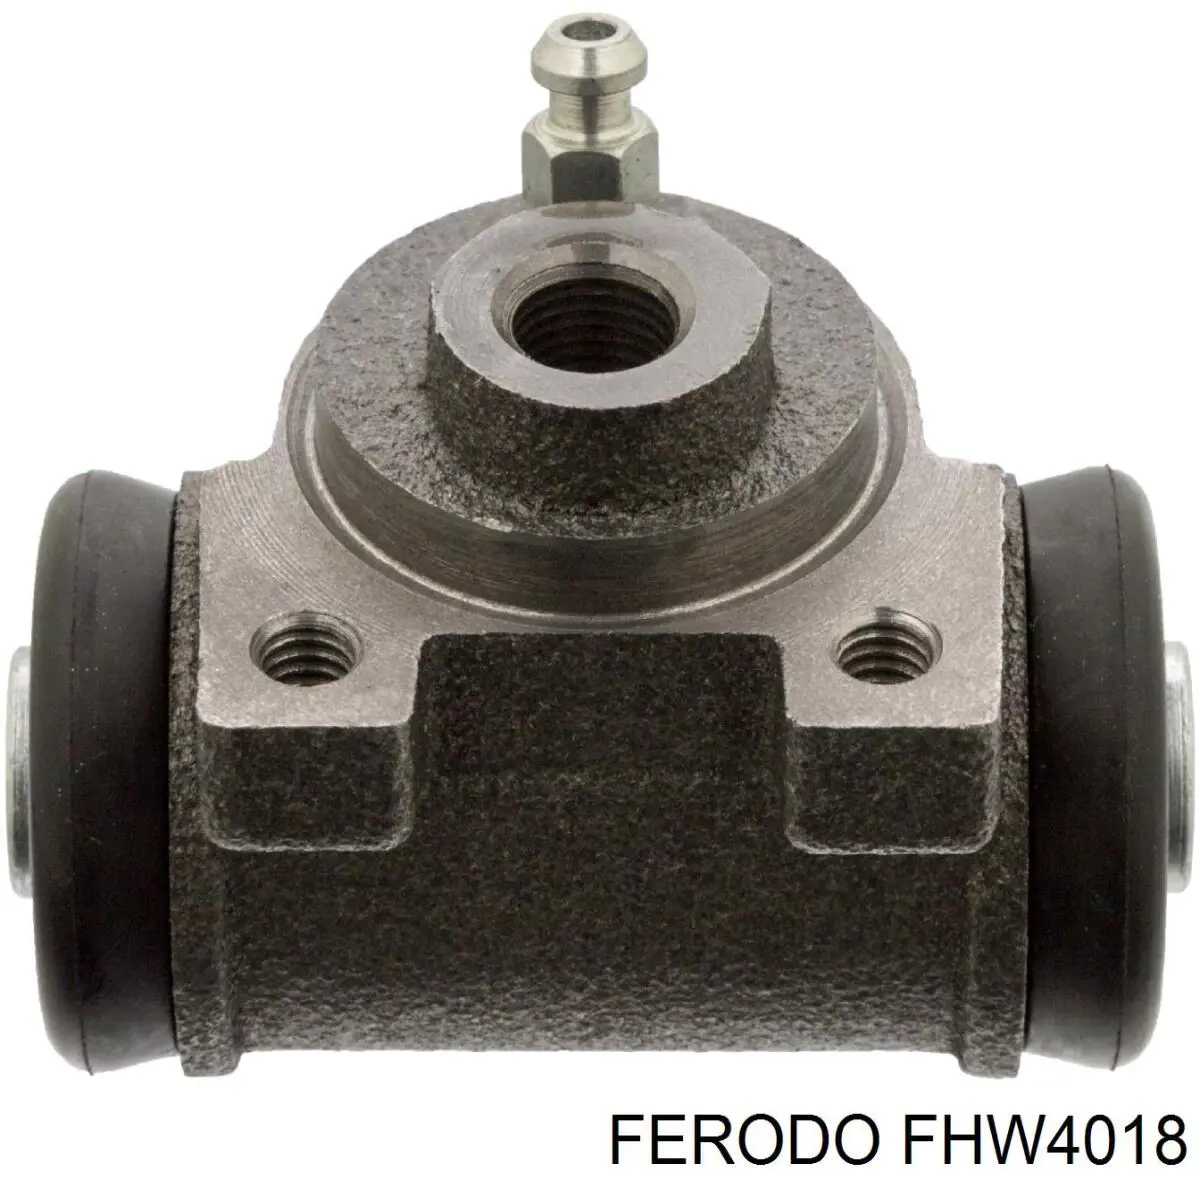 FHW4018 Ferodo cilindro de freno de rueda trasero